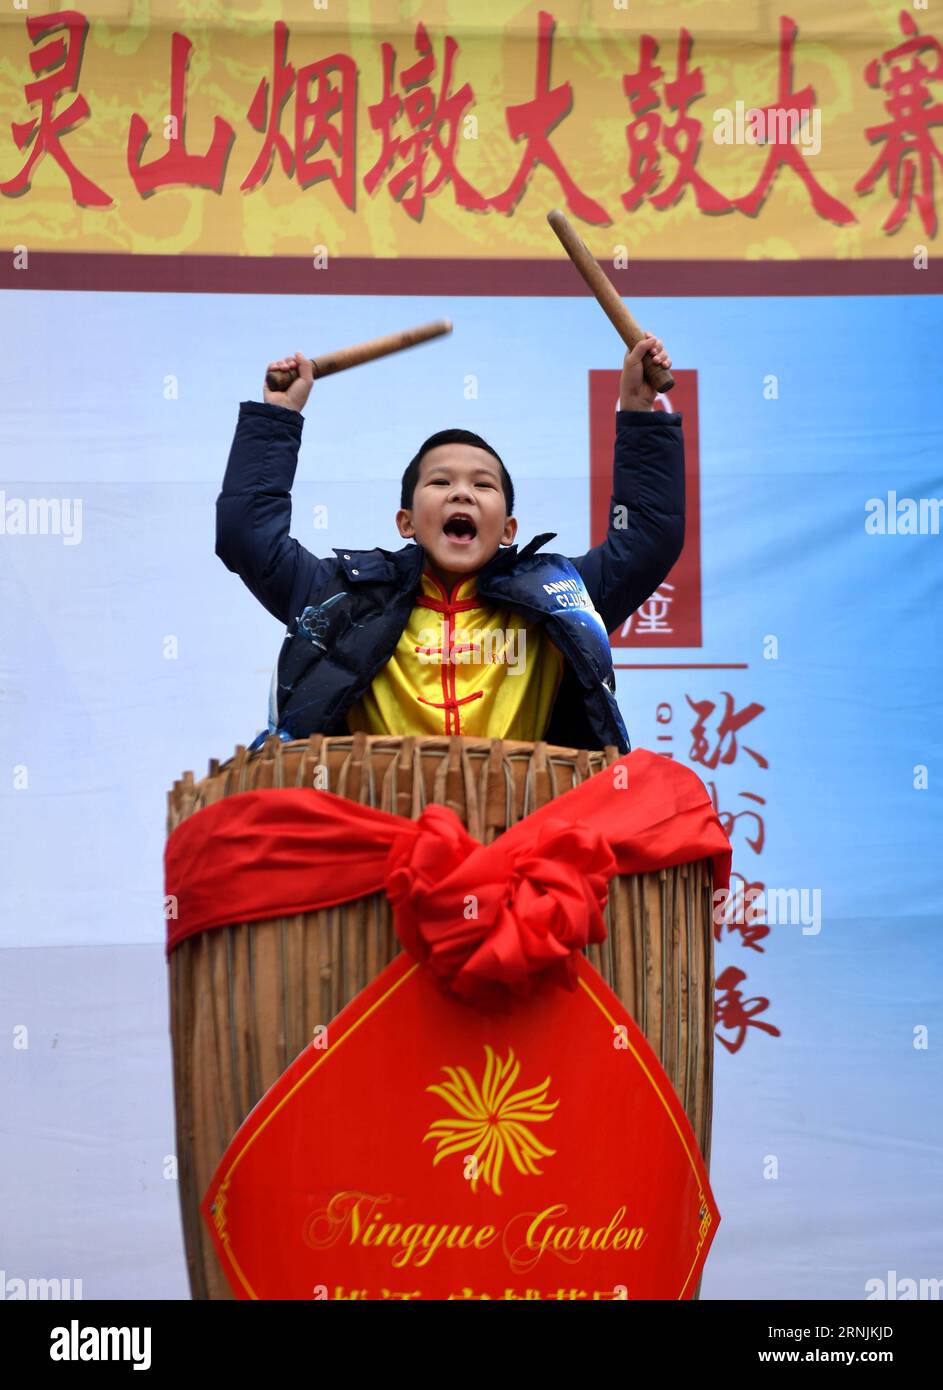 (170202) -- QINZHOU, 2 février 2017 -- Un garçon bat un tambour lors d'une compétition de tambours organisée pour célébrer le Festival du Printemps chinois à Qinzhou, dans la région autonome de Guangxi Zhuang, dans le sud de la Chine, le 2 février 2017.) (wyl) CHINA-GUANGXI-SPRING FESTIVAL-CELEBRATION (CN) ZhangxAilin PUBLICATIONxNOTxINxCHN Qinzhou février 2 2017 un garçon bat un tambour lors d'une compétition de tambour héros pour célébrer la fête du printemps chinois à Qinzhou Sud de la Chine S Guangxi Zhuang région autonome février 2 2017 wyl Chine Guangxi célébration du festival du printemps CN ZhangxAilin PUBLICATIONxNOTxNoxNot Banque D'Images